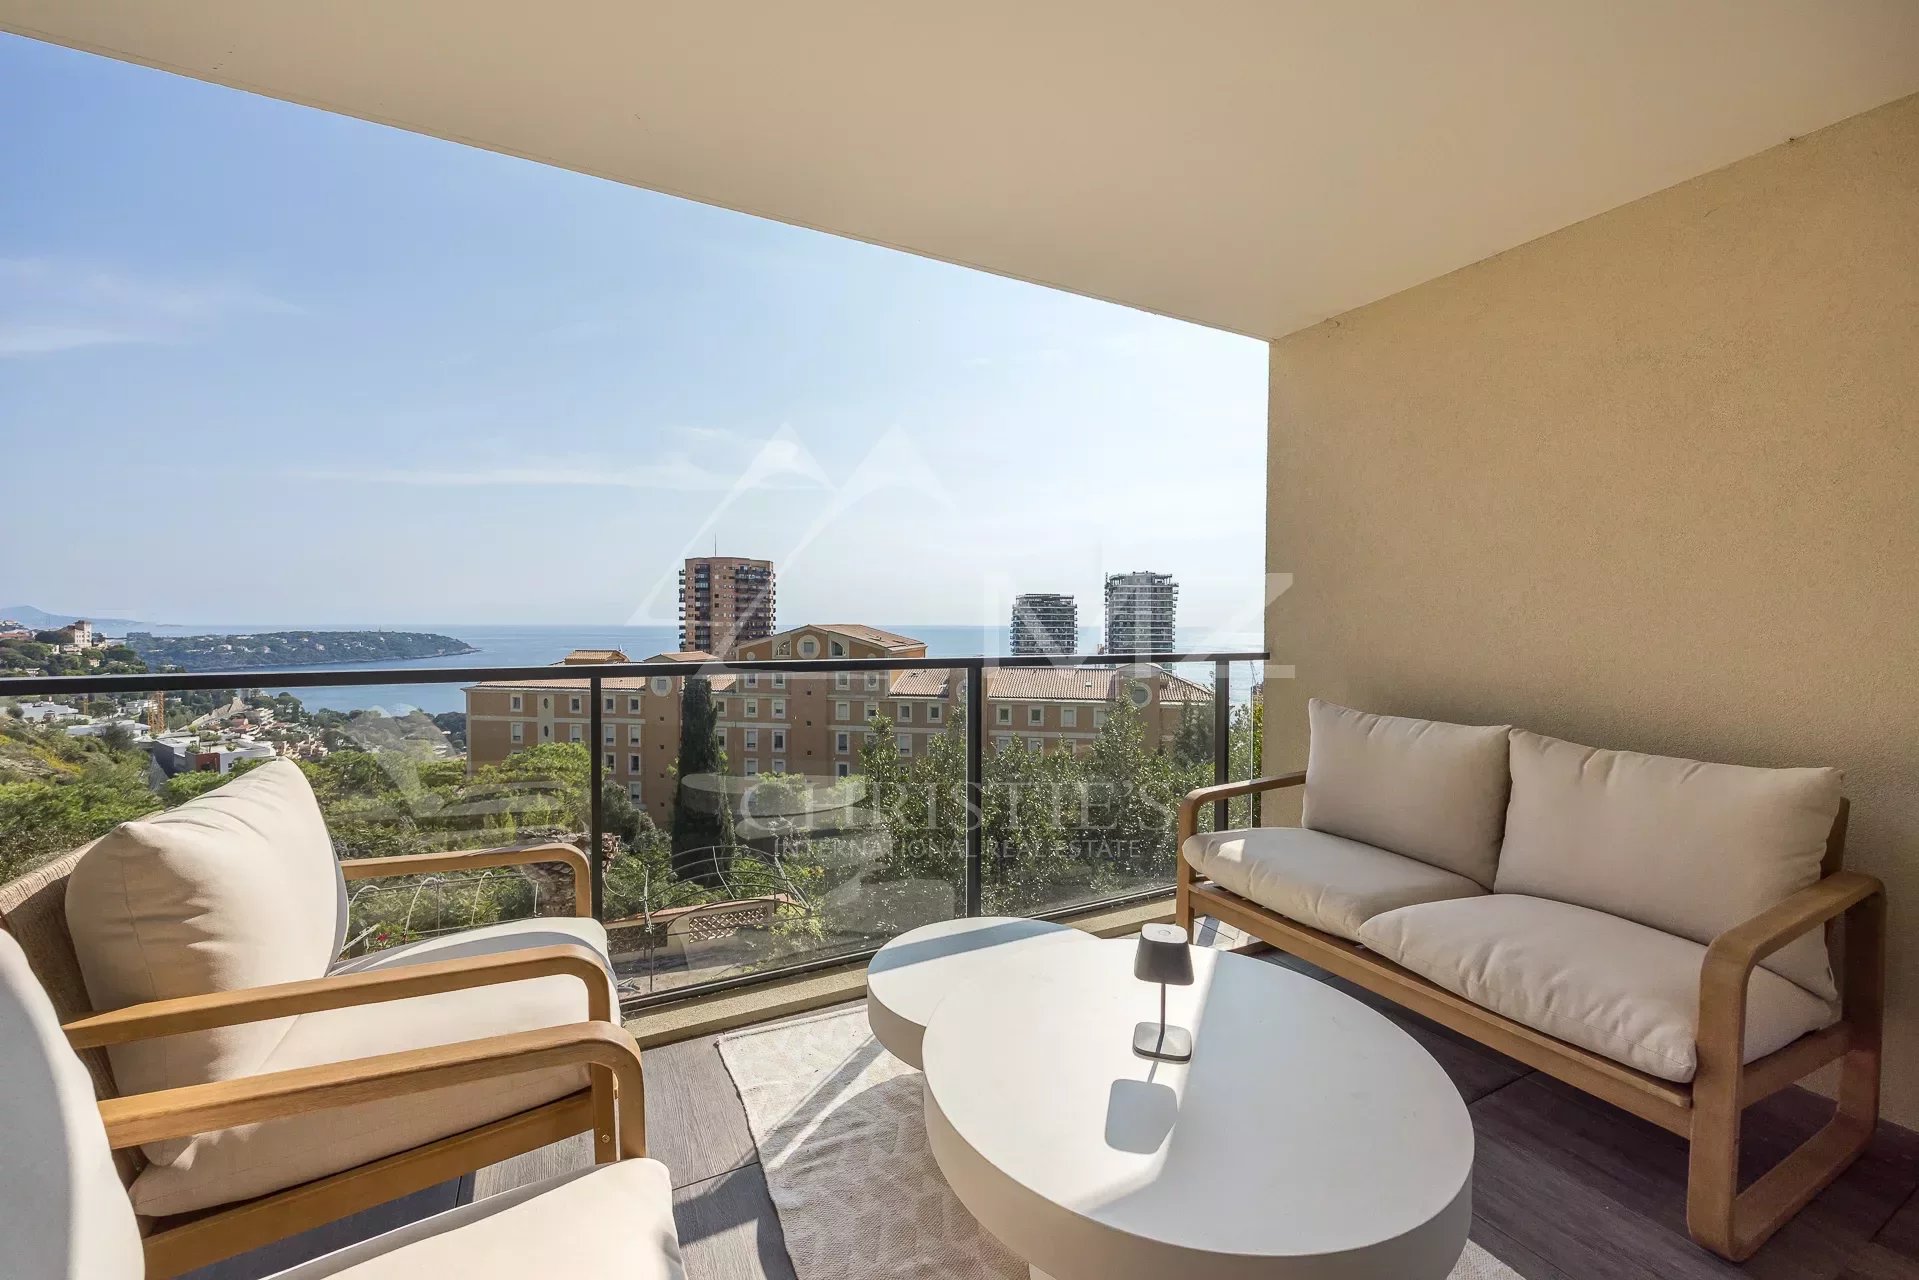 Magnifique appartement avec Vue mer panoramique